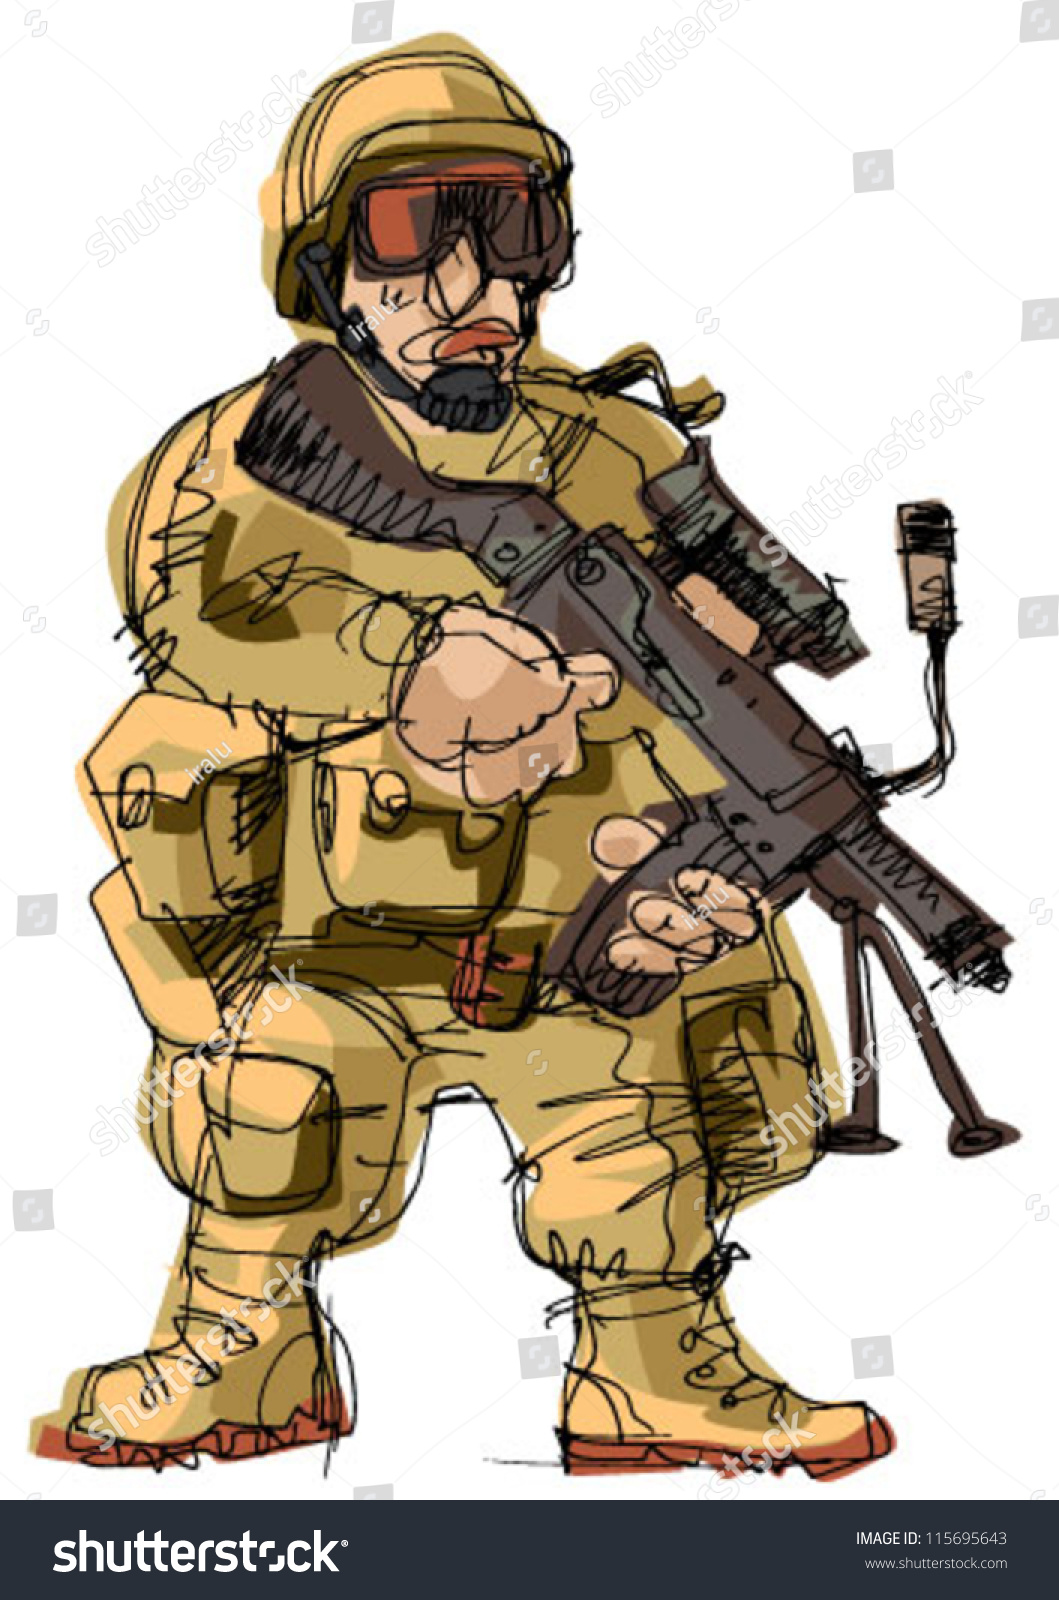 Soldier Cartoon Stock Vector 115695643 - Shutterstock